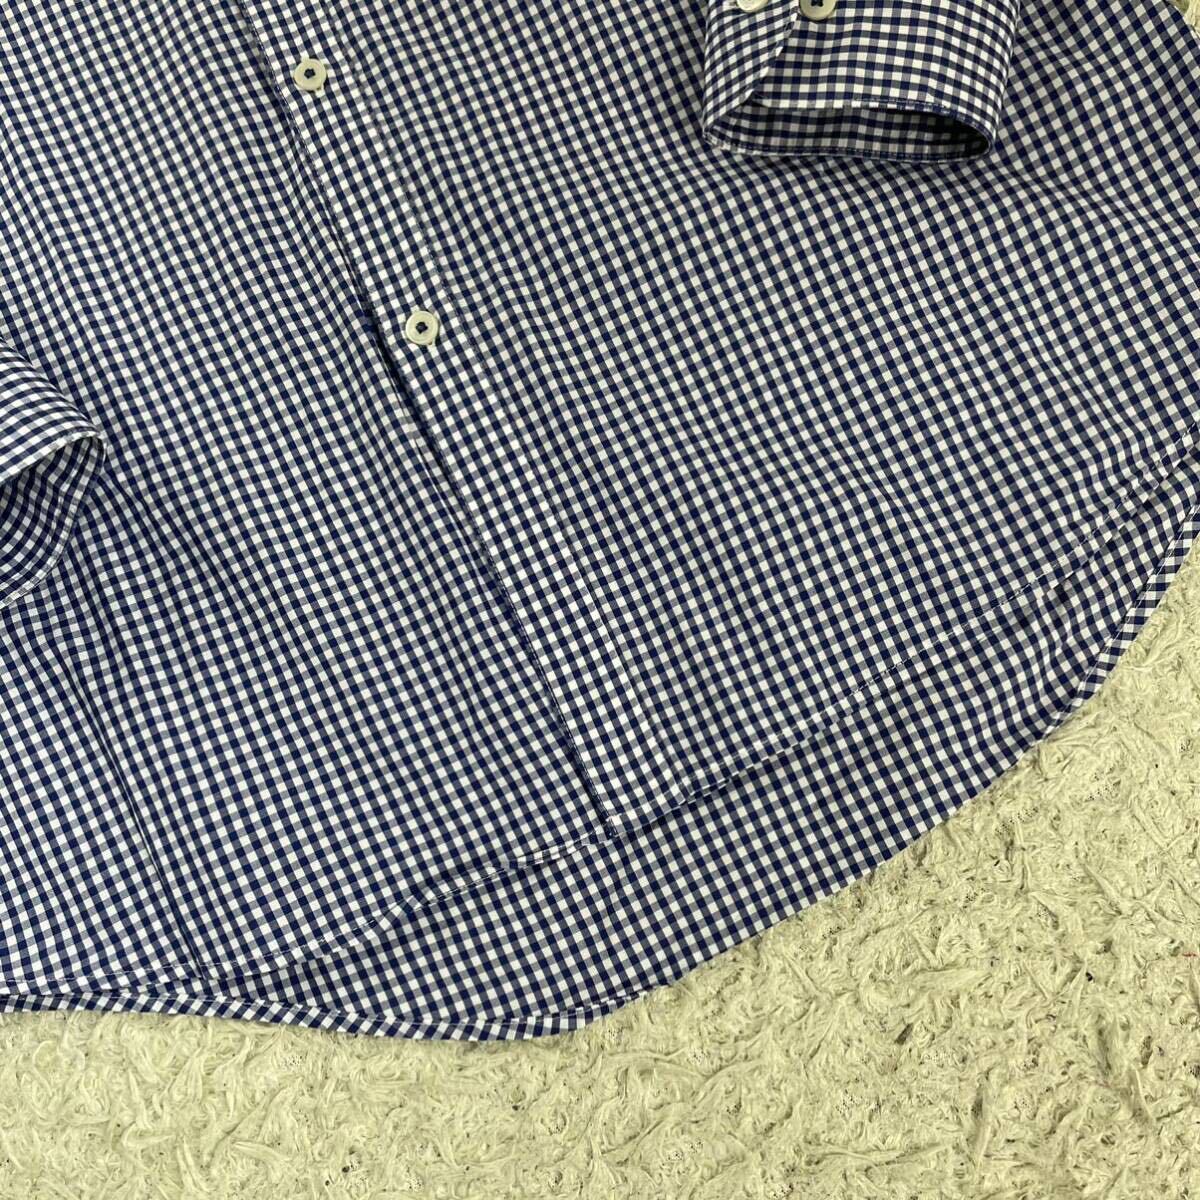 1 иен ~ [ не использовался класс!] Burberry Black Label BURBERRYBLACKLABEL рубашка мужской длинный рукав серебристый жевательная резинка проверка шланг Logo хлопок 40 L